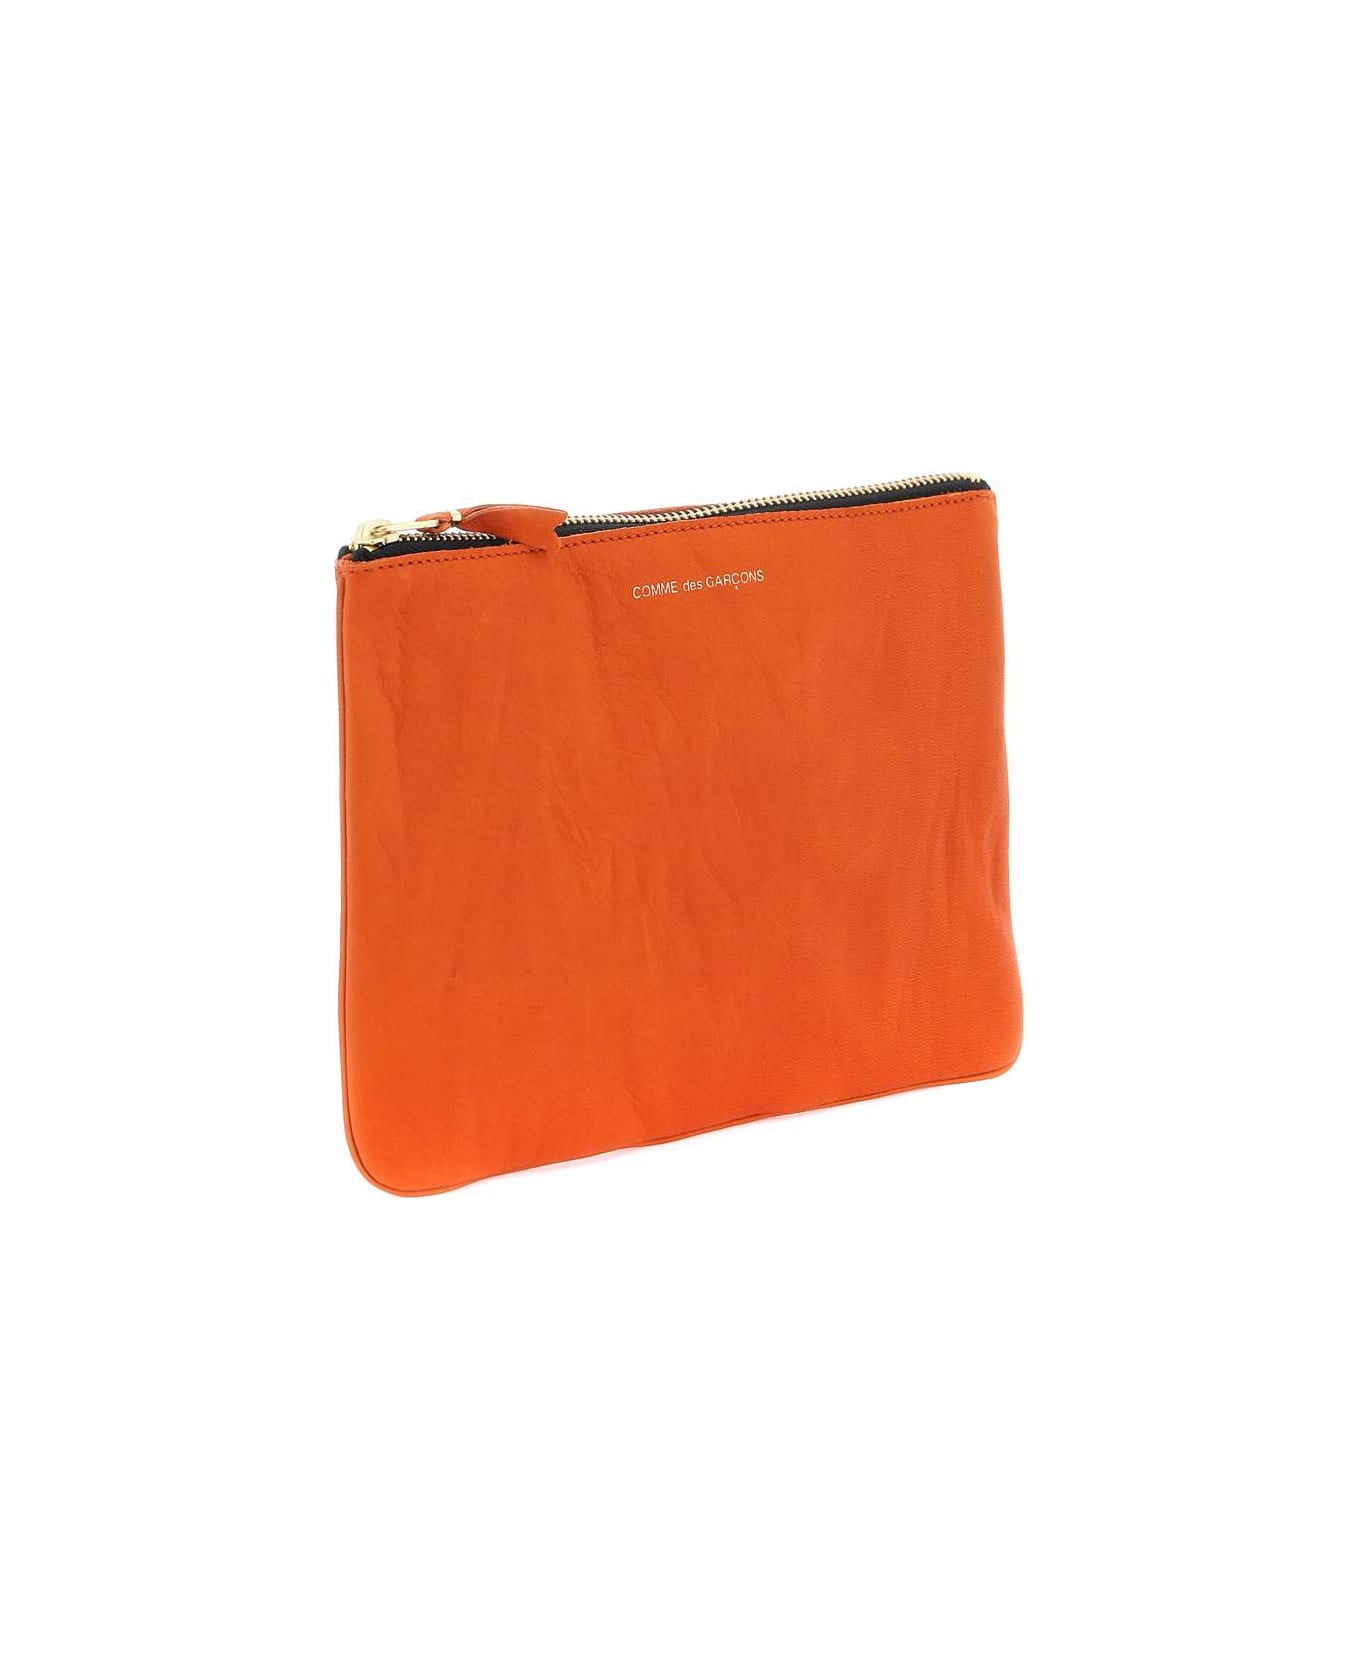 Comme des Garçons Wallet Classic Pouch - BURNT ORANGE (Orange)